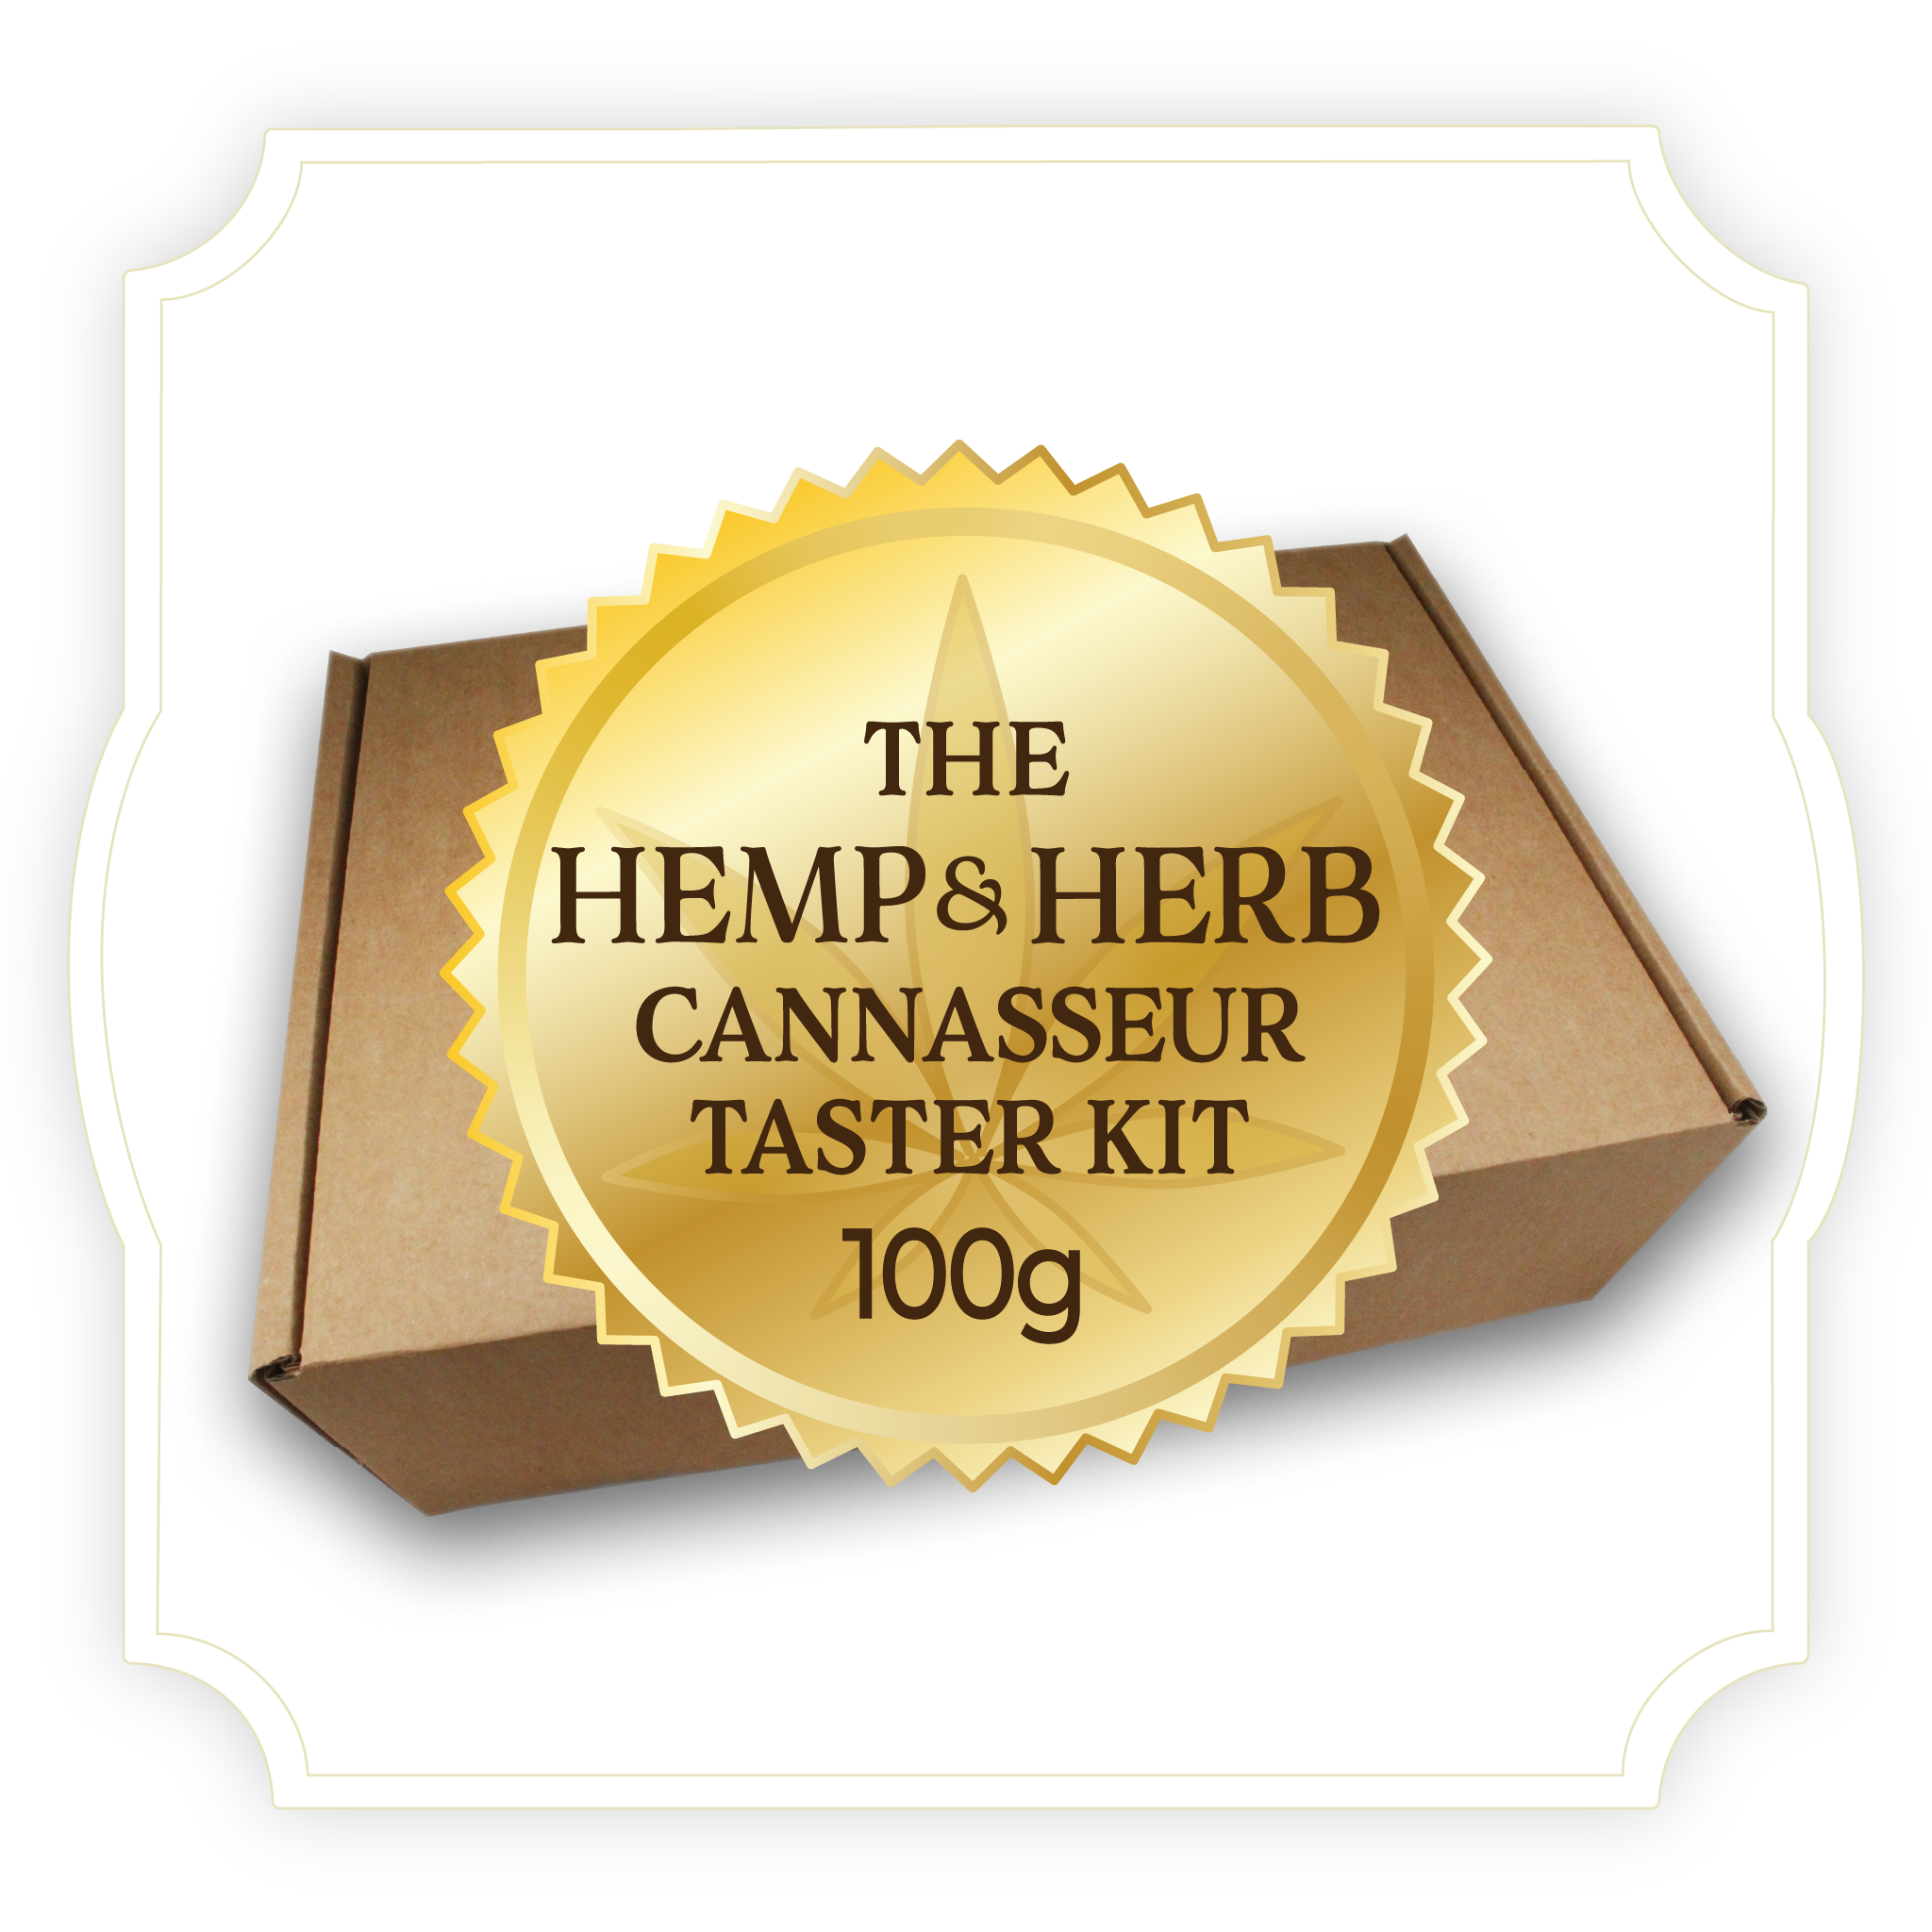 The 100g Hemp & Herb Cannasseur Taster Kit | Premium Hemp Variety Box | Build Your Own Custom Kit